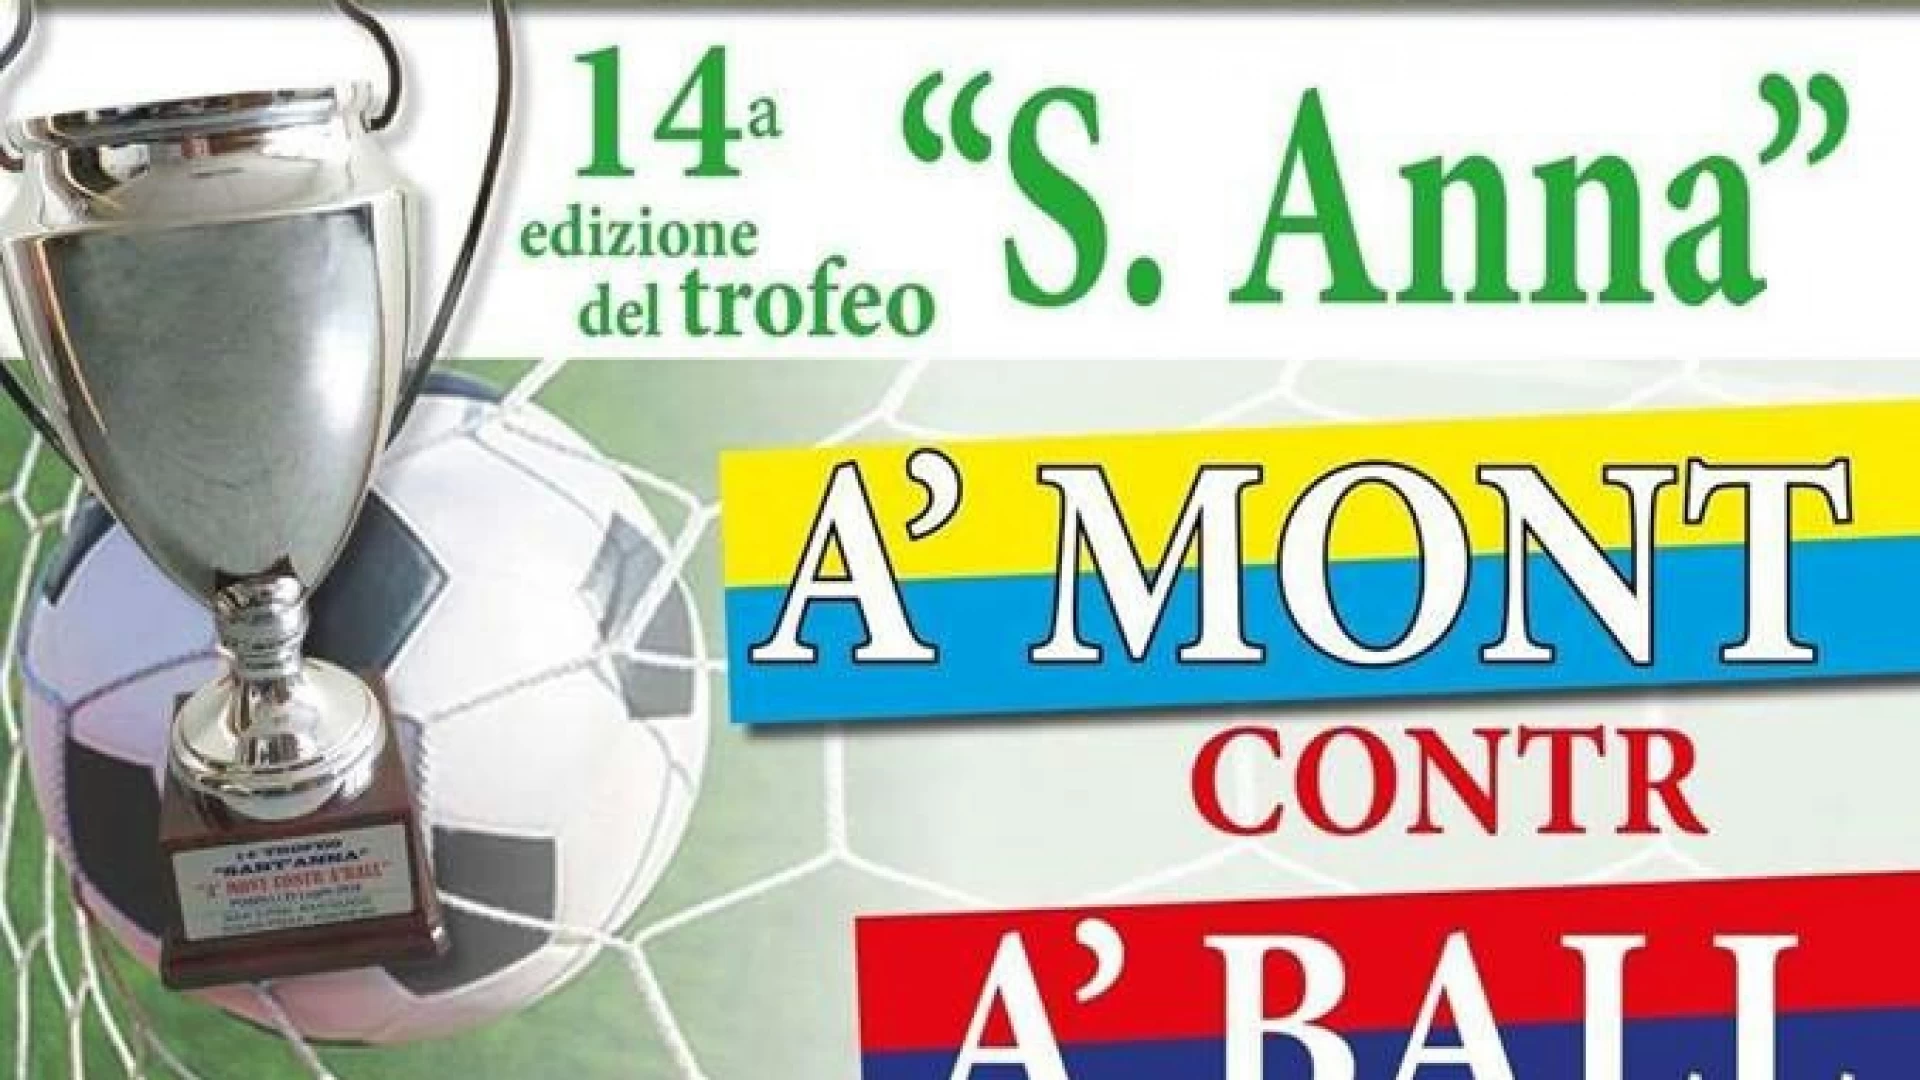 Tradizione e pallone: questa sera a Pozzilli torna il trofeo Sant'Anna. Mitica sfida A Mont vs A Ball.